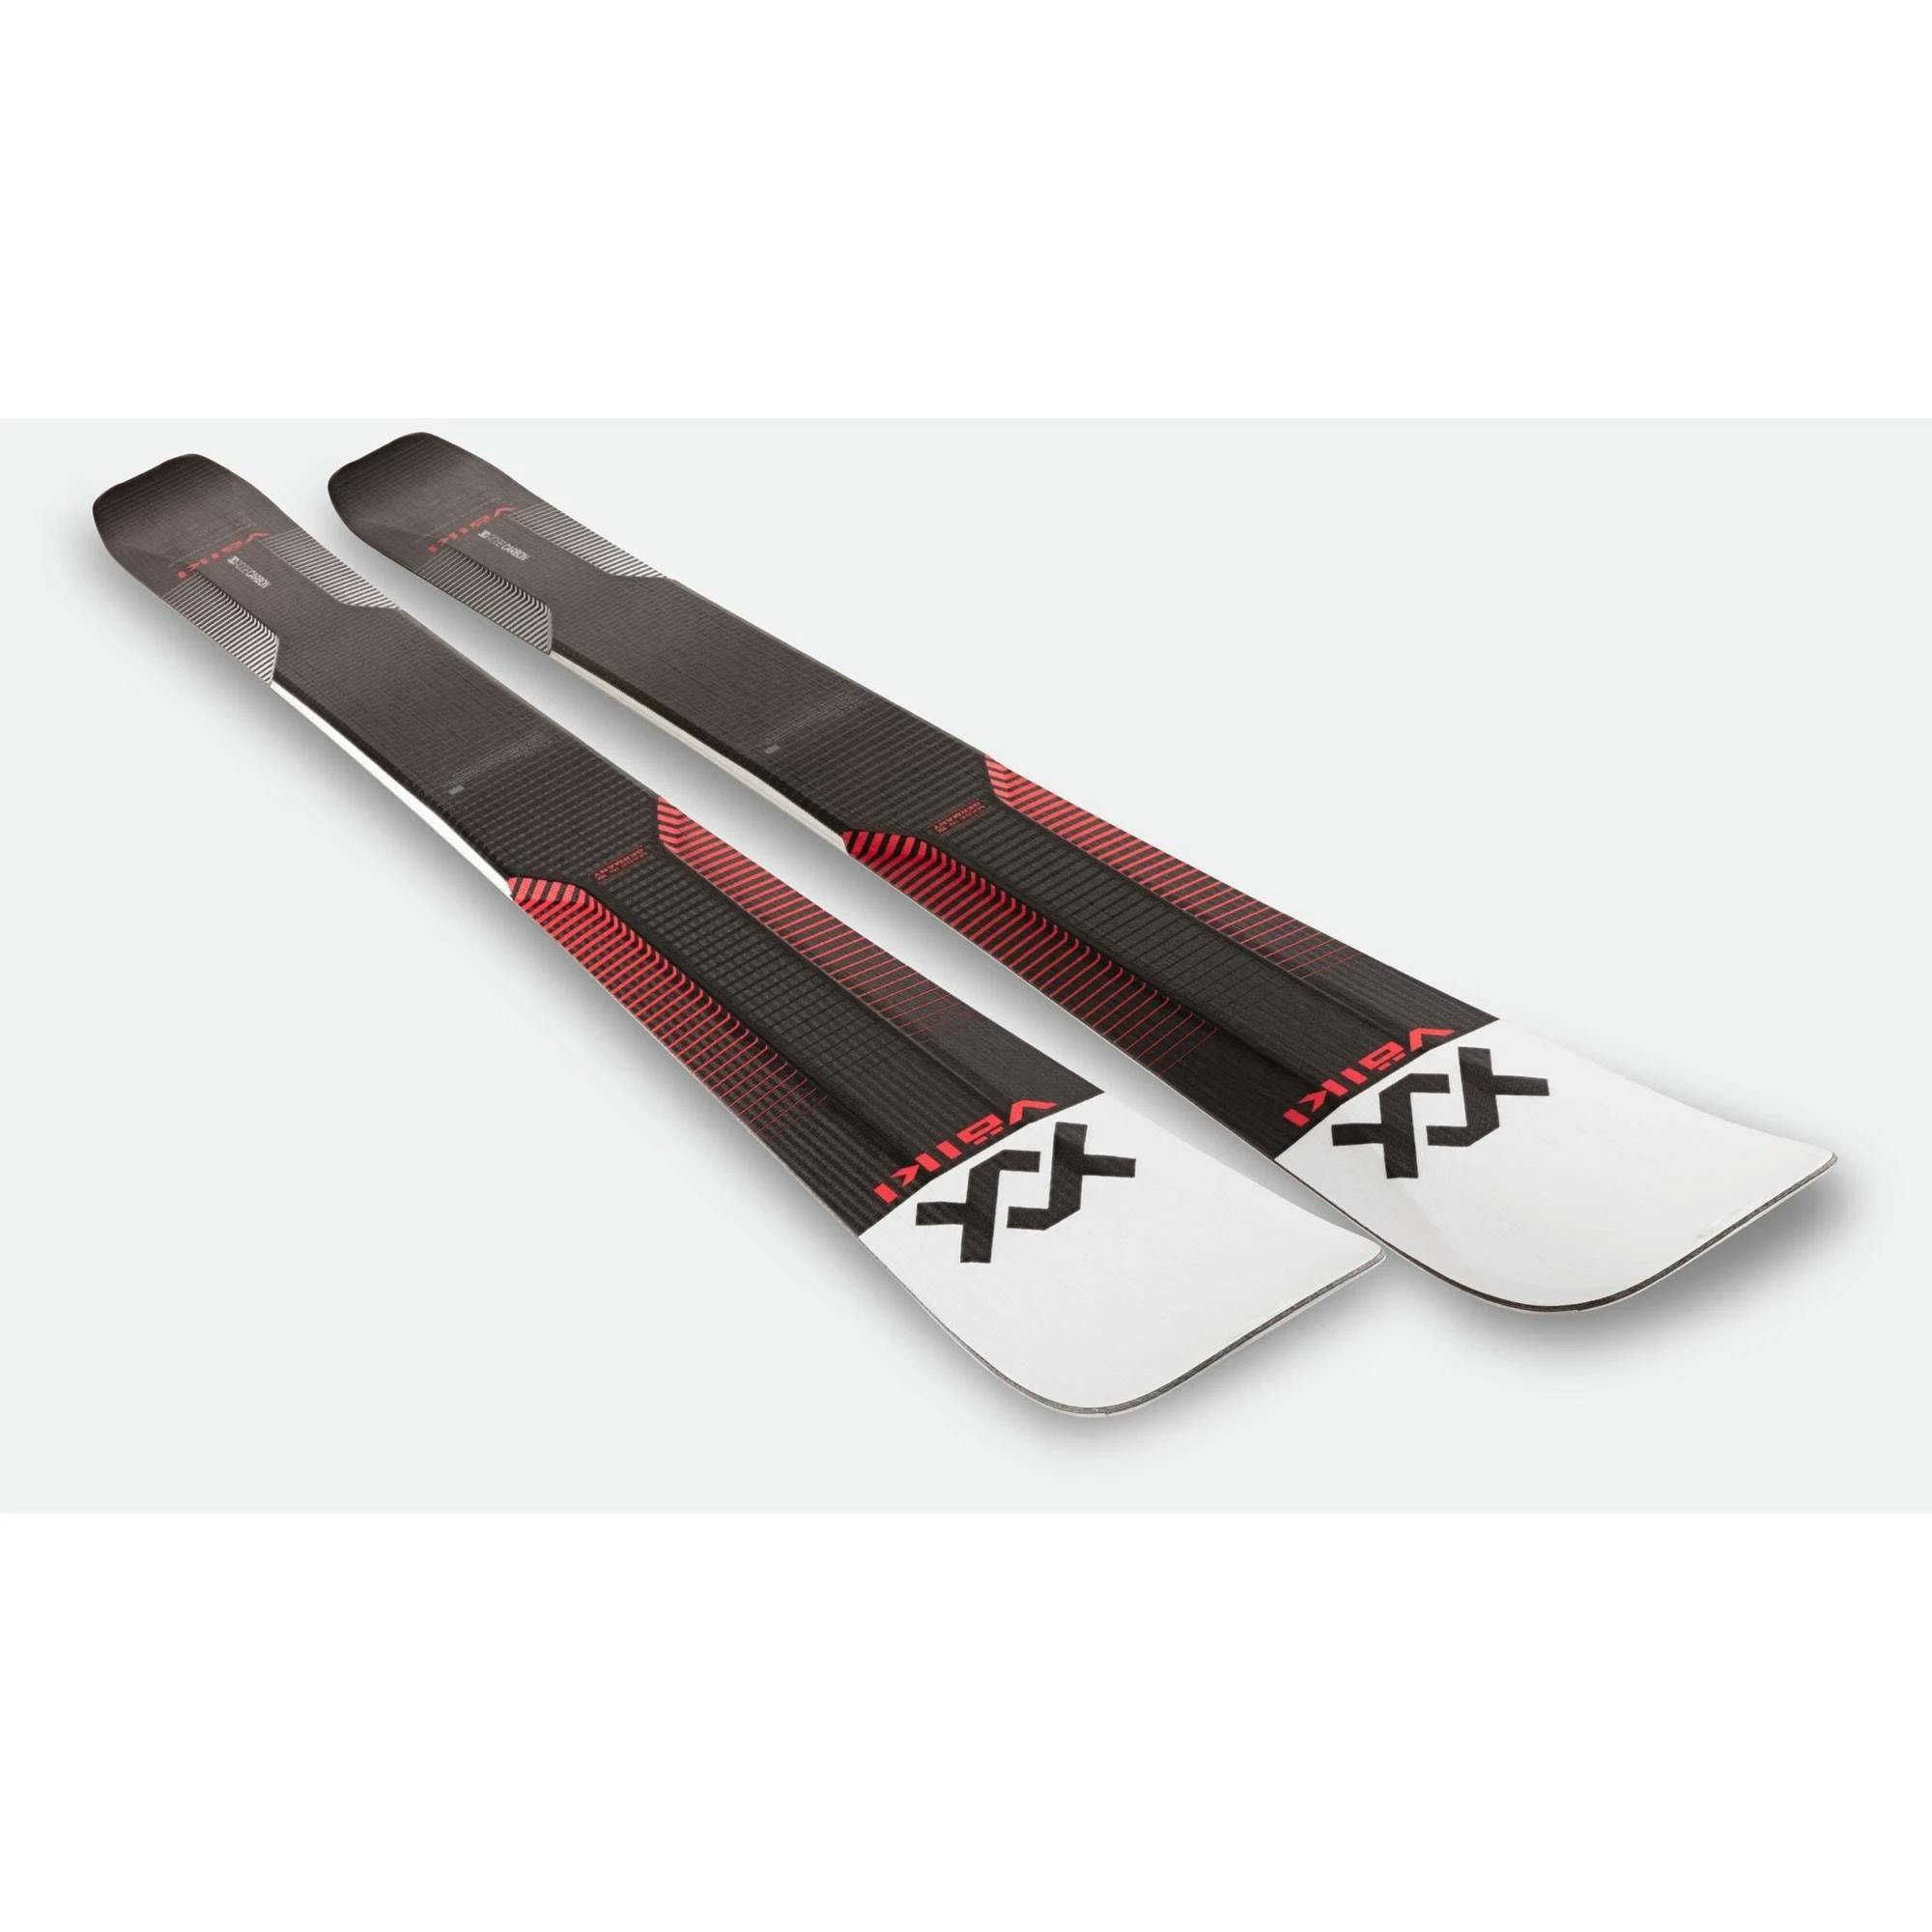 Völkl Mantra V Werks Skis · 186 cm